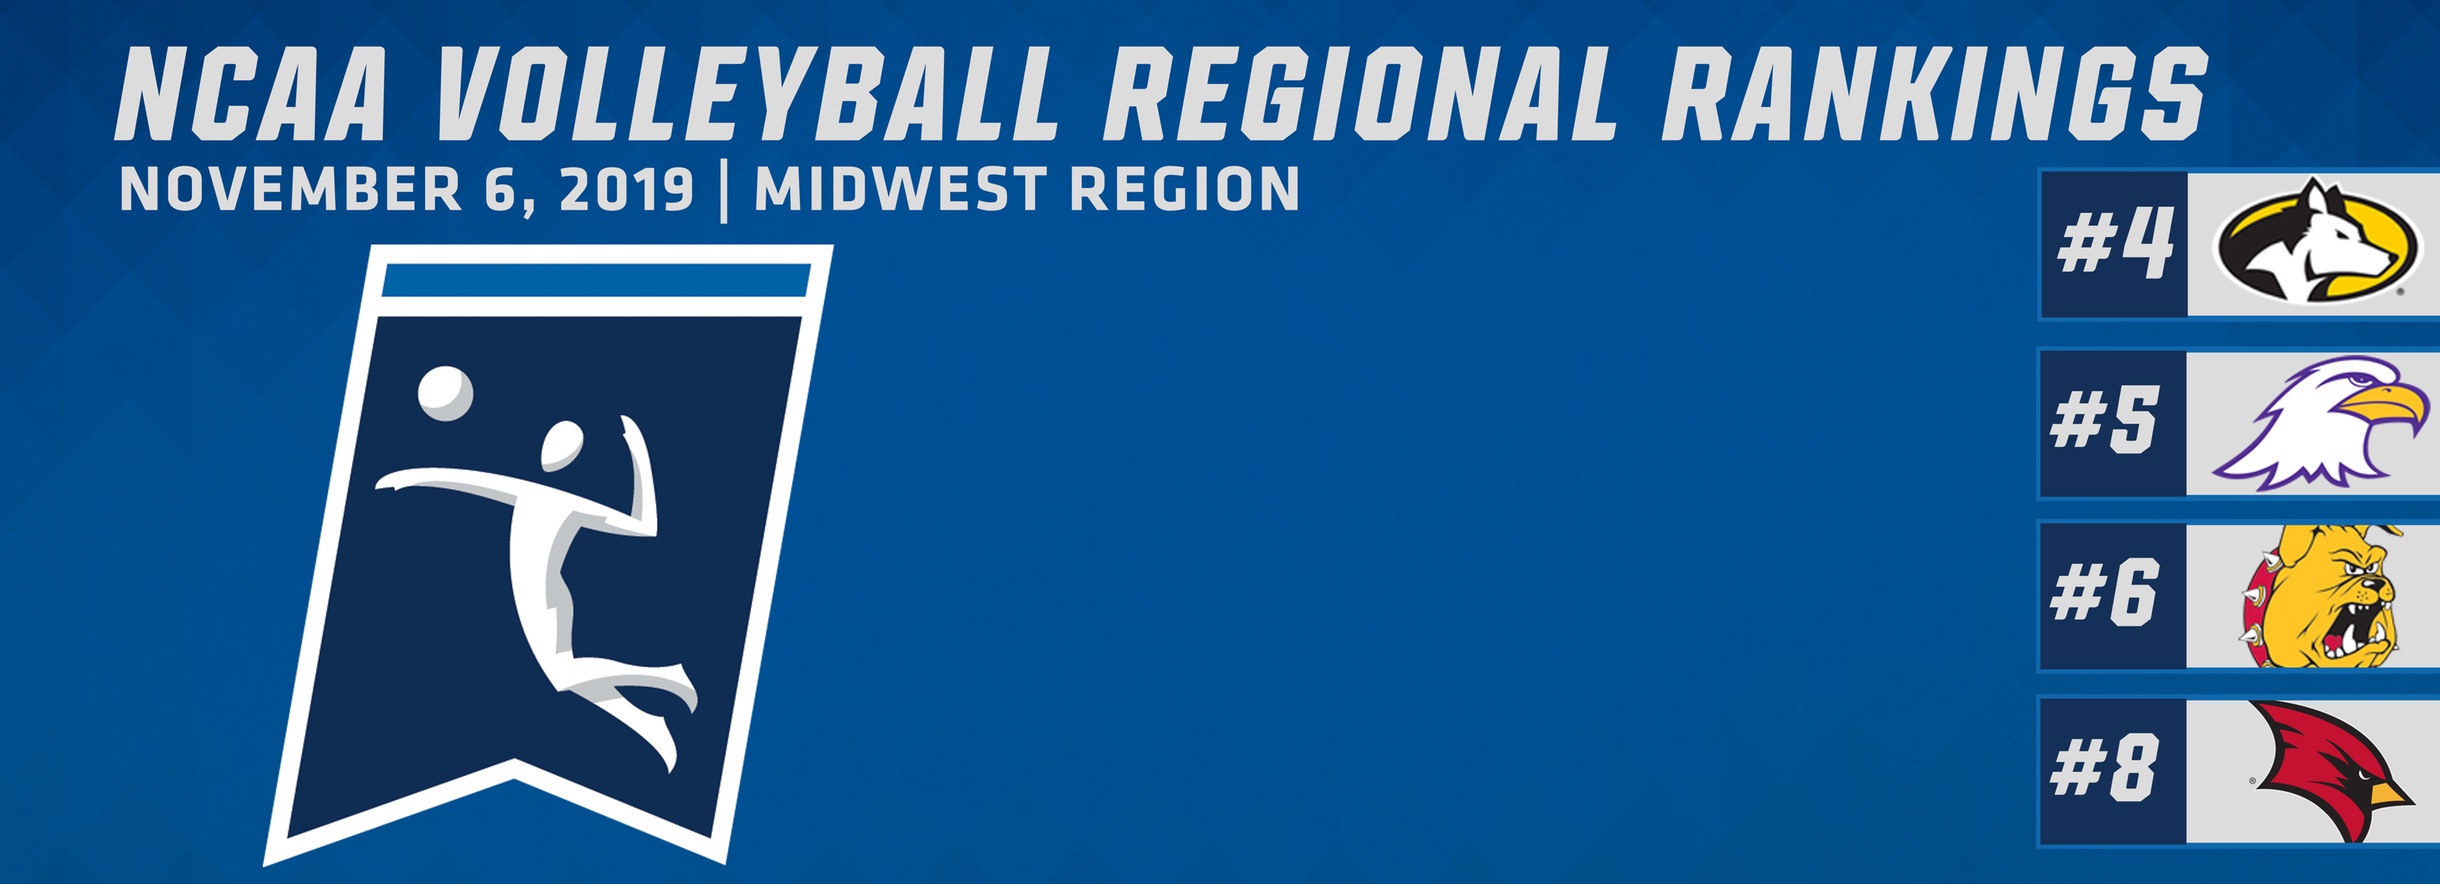 NCAA Volleyball Regional Rankings Announced; MTU 4th, AU 5th, FSU 6th, SVSU 8th in Midwest Region